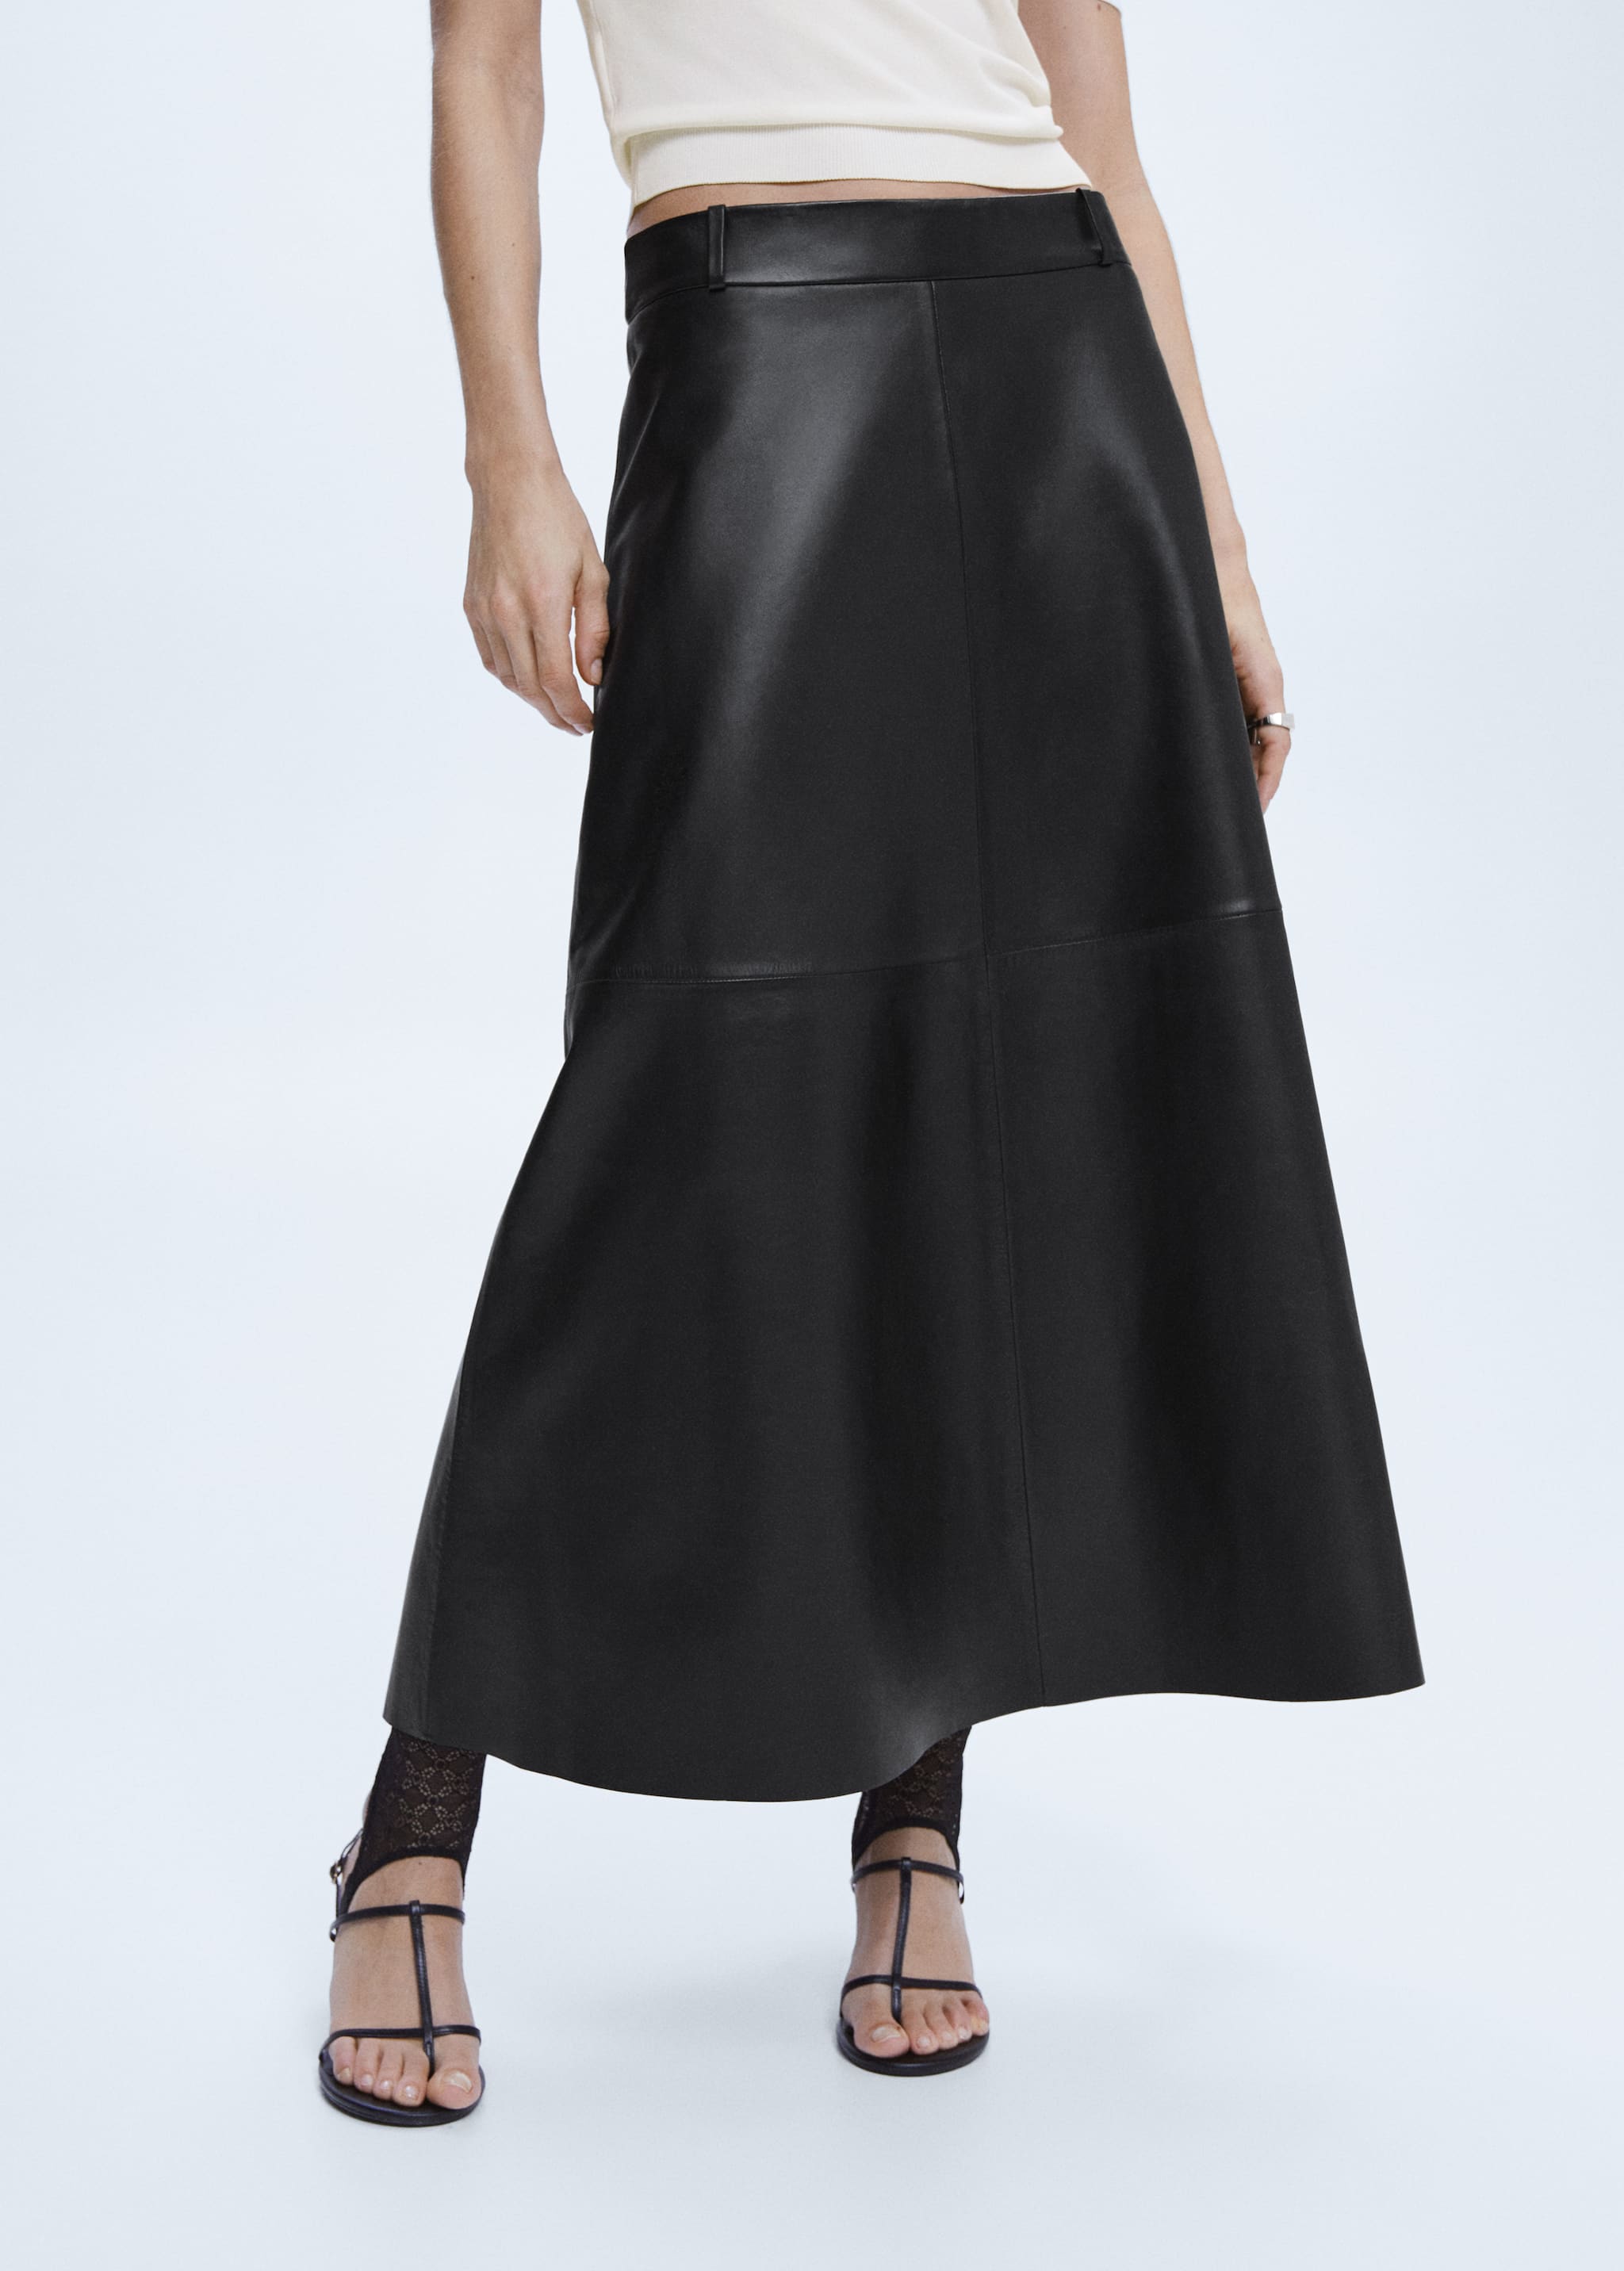 100% leather midi skirt - Medium plane